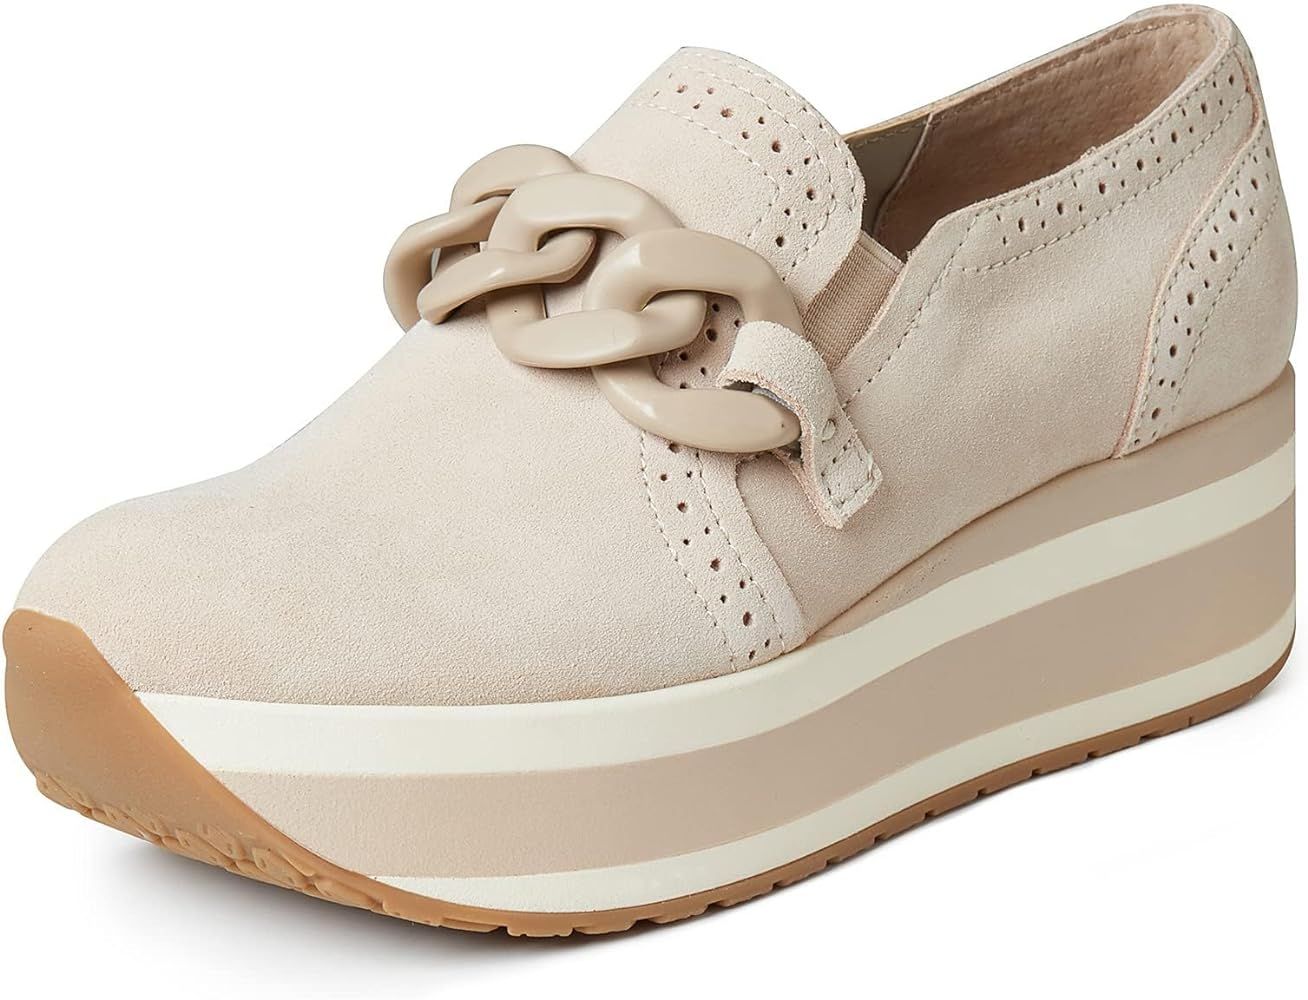 Celbreez Platform Sneakers for Women Round Toe Slip On Classic Wedge Heel Loafers Sneaker Comfort... | Amazon (US)